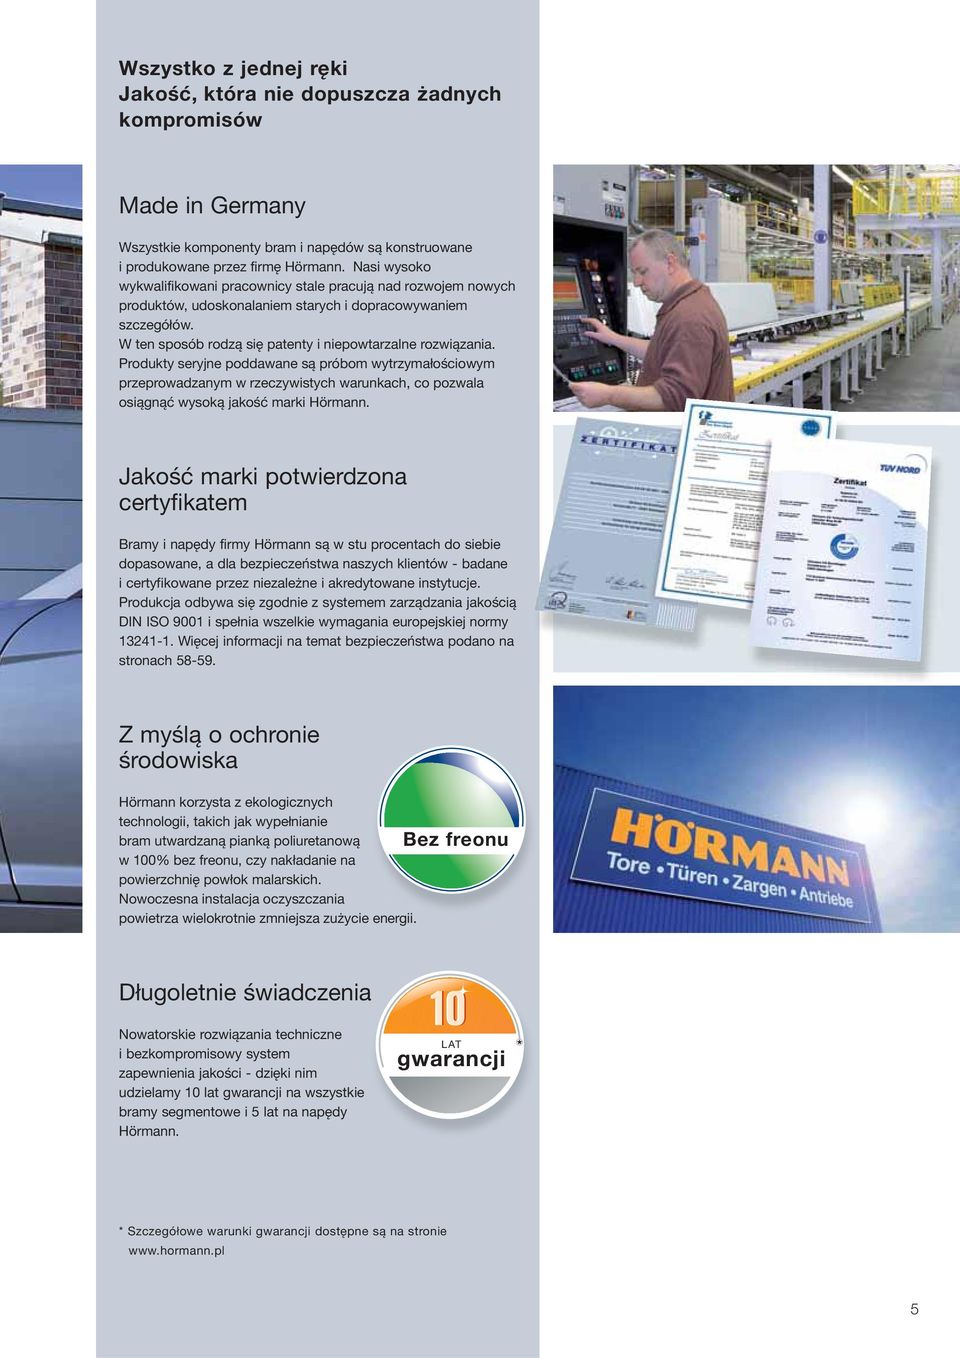 Produkty seryjne poddawane są próbom wytrzymałościowym przeprowadzanym w rzeczywistych warunkach, co pozwala osiągnąć wysoką jakość marki Hörmann.